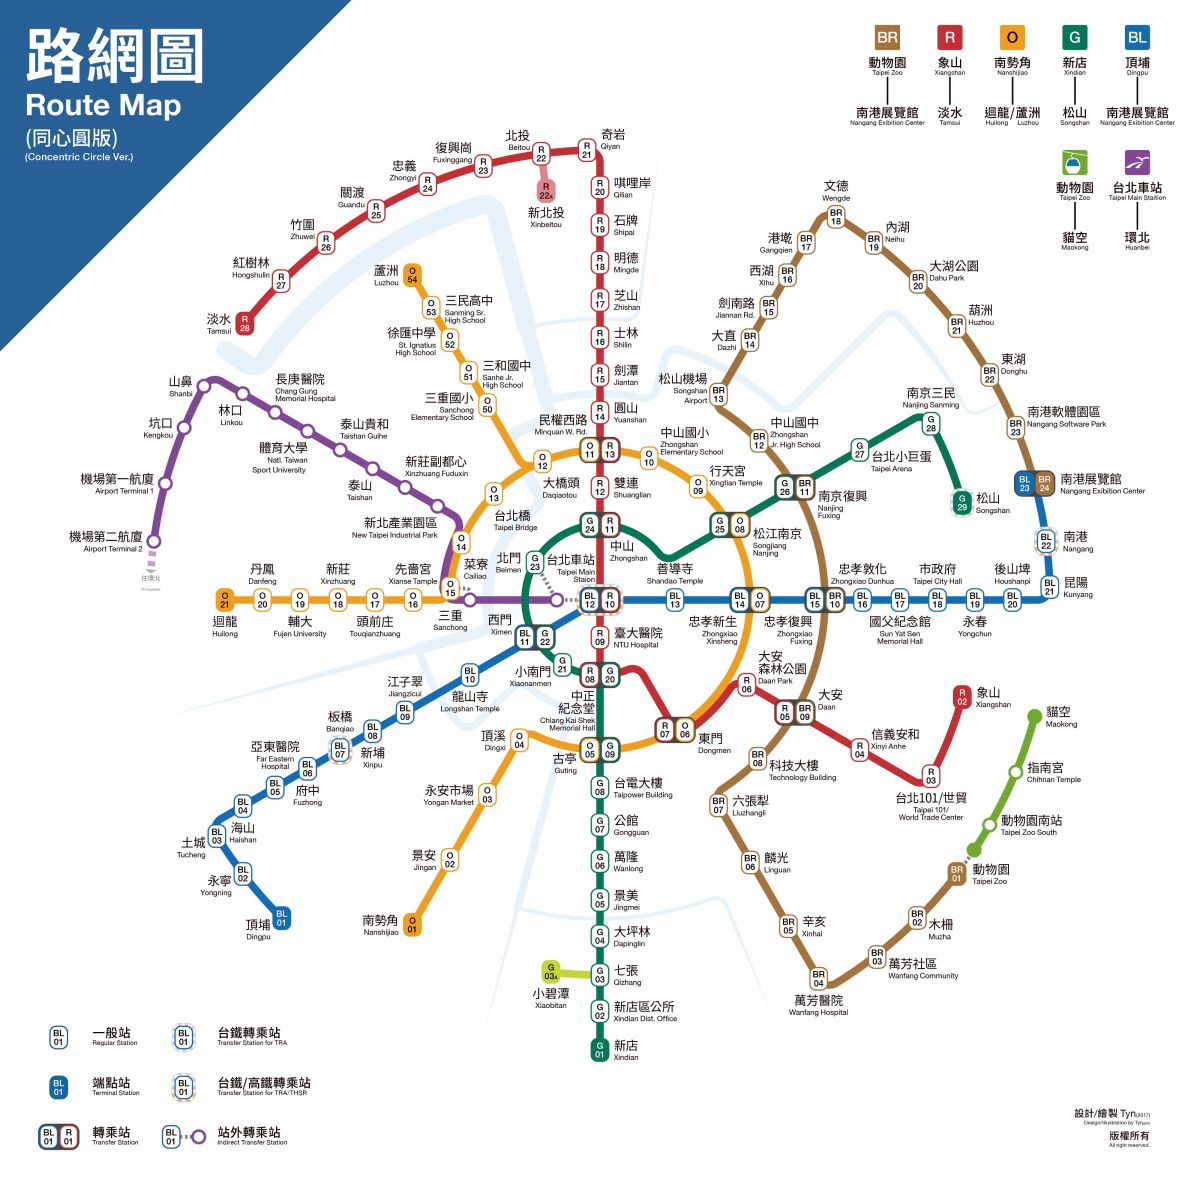 台北捷运好复杂?网友自制「同心圆」路线图一次搞清楚! | 文章内置图片